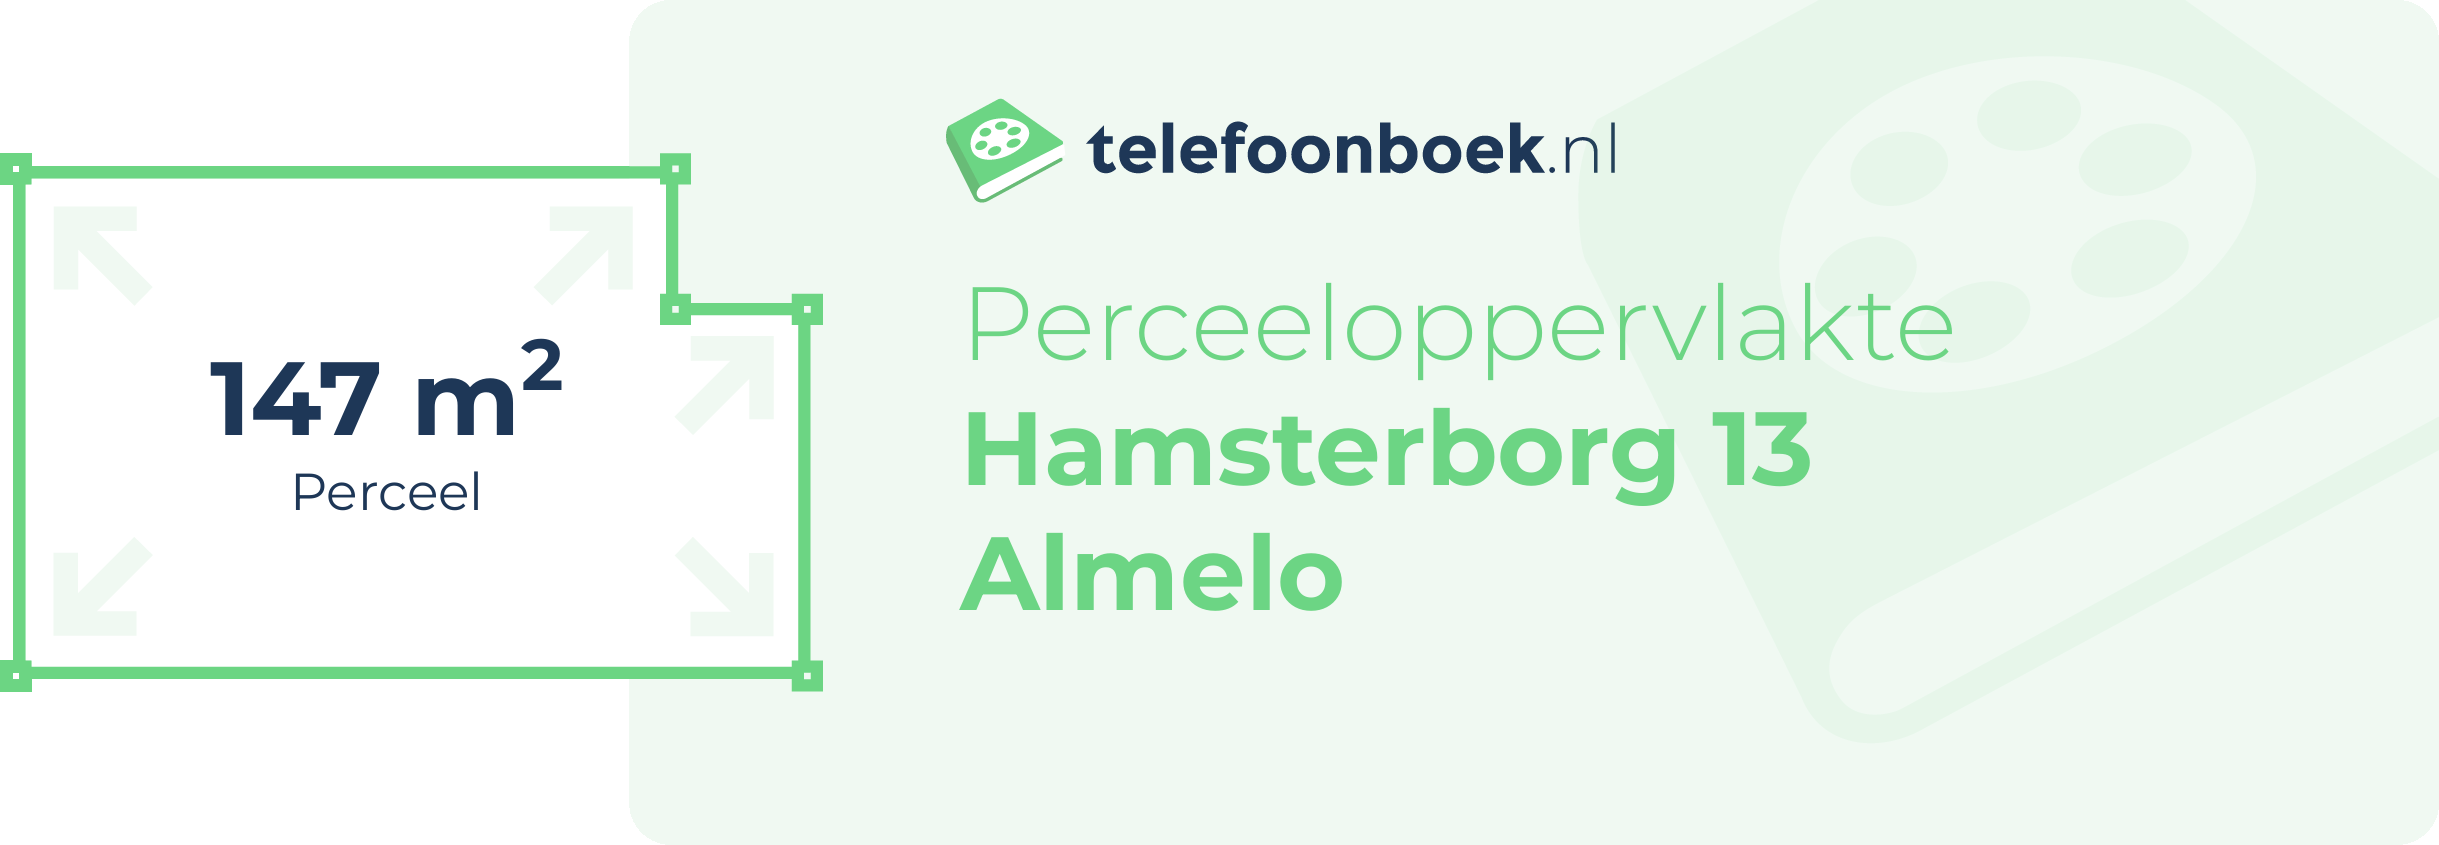 Perceeloppervlakte Hamsterborg 13 Almelo